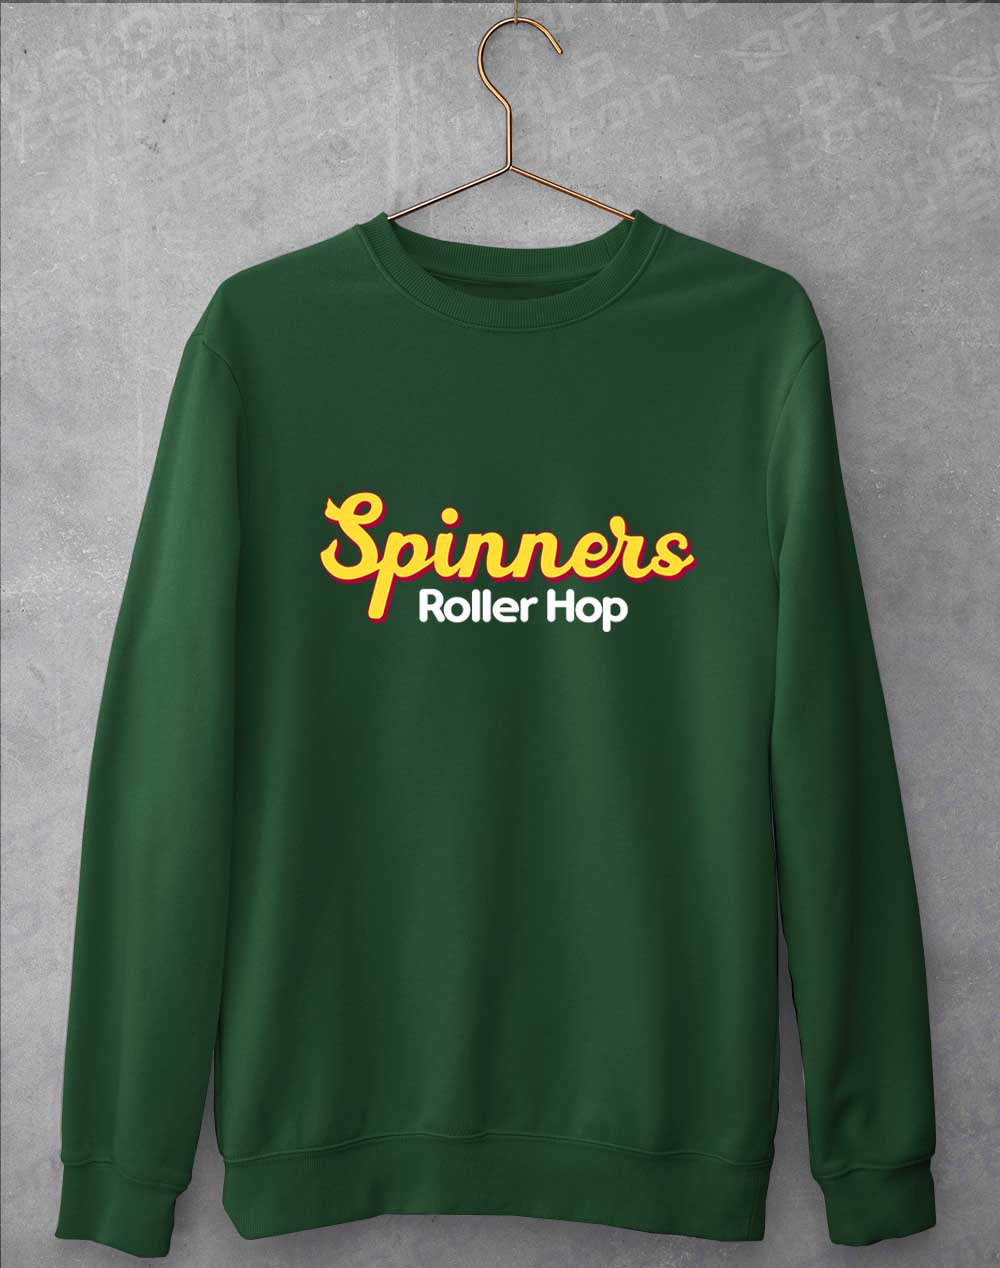 Bottle Green - Spinners Roller Hop Sweatshirt